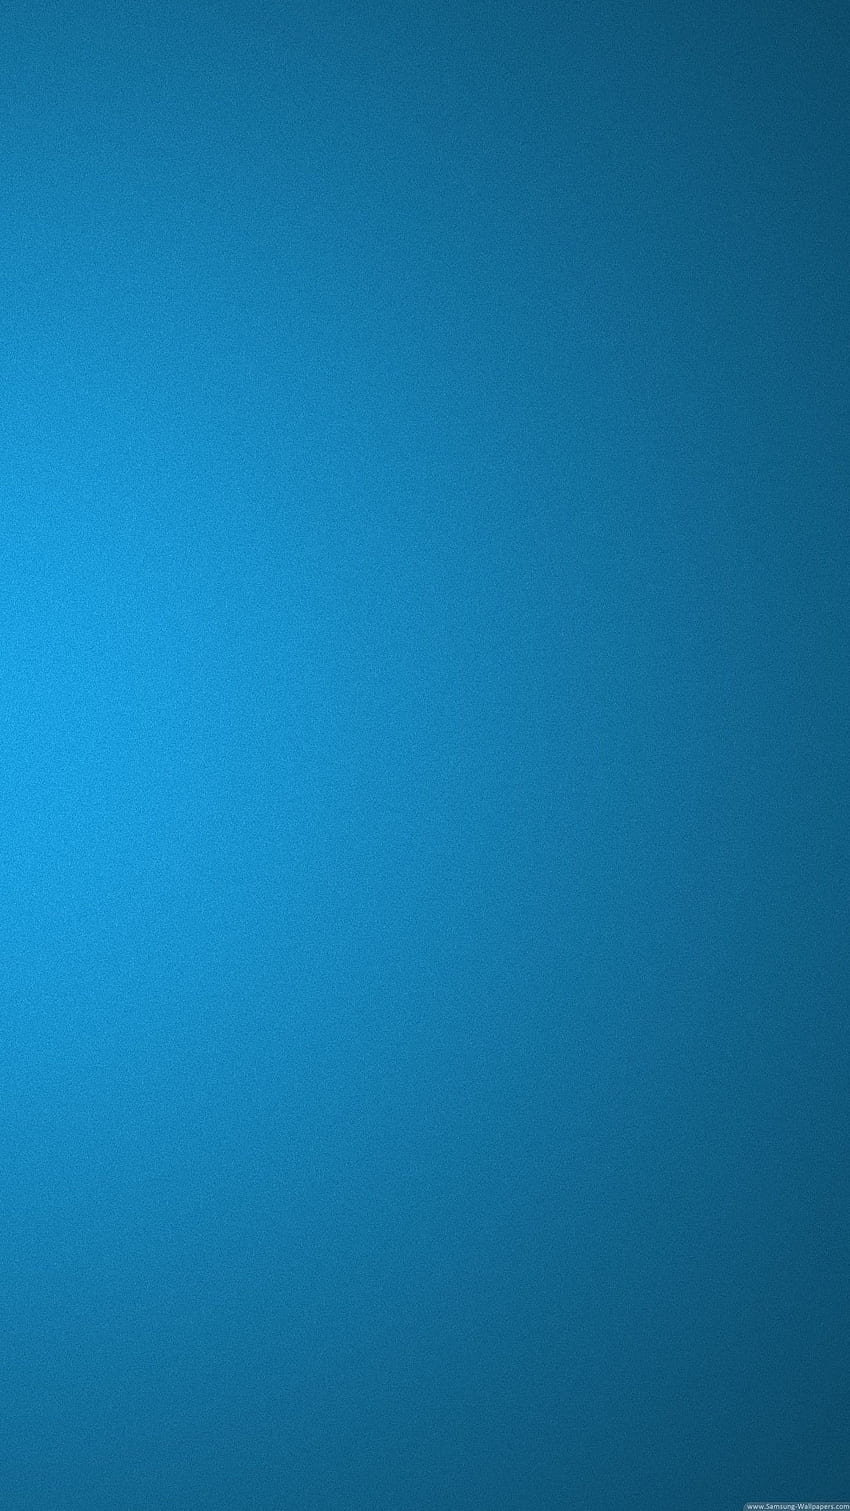 Schermo di blocco blu Samsung Galaxy S5 - Abbigliamento. Iphone a colori, S5, blu, azzurro chiaro Sfondo del telefono HD